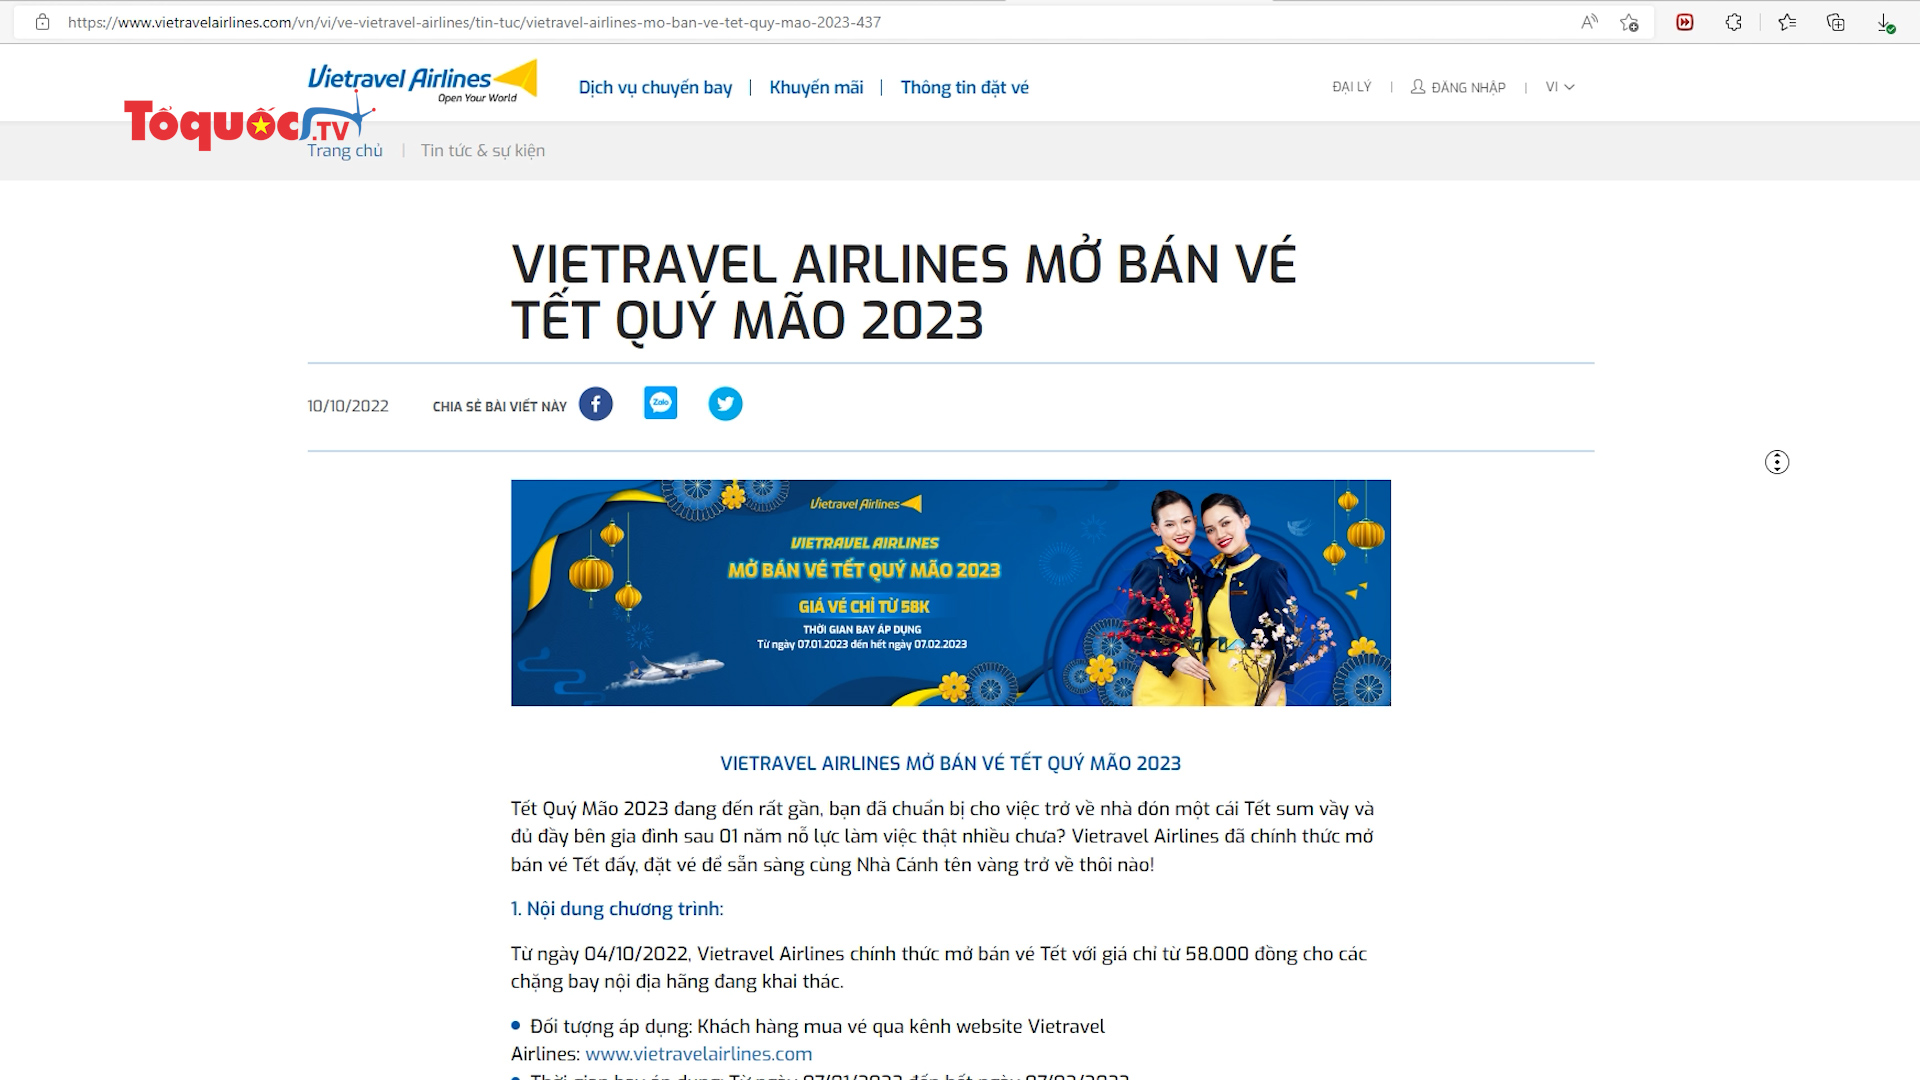 Vietravel Airlines chính thức mở bán vé Tết Quý Mão 2023